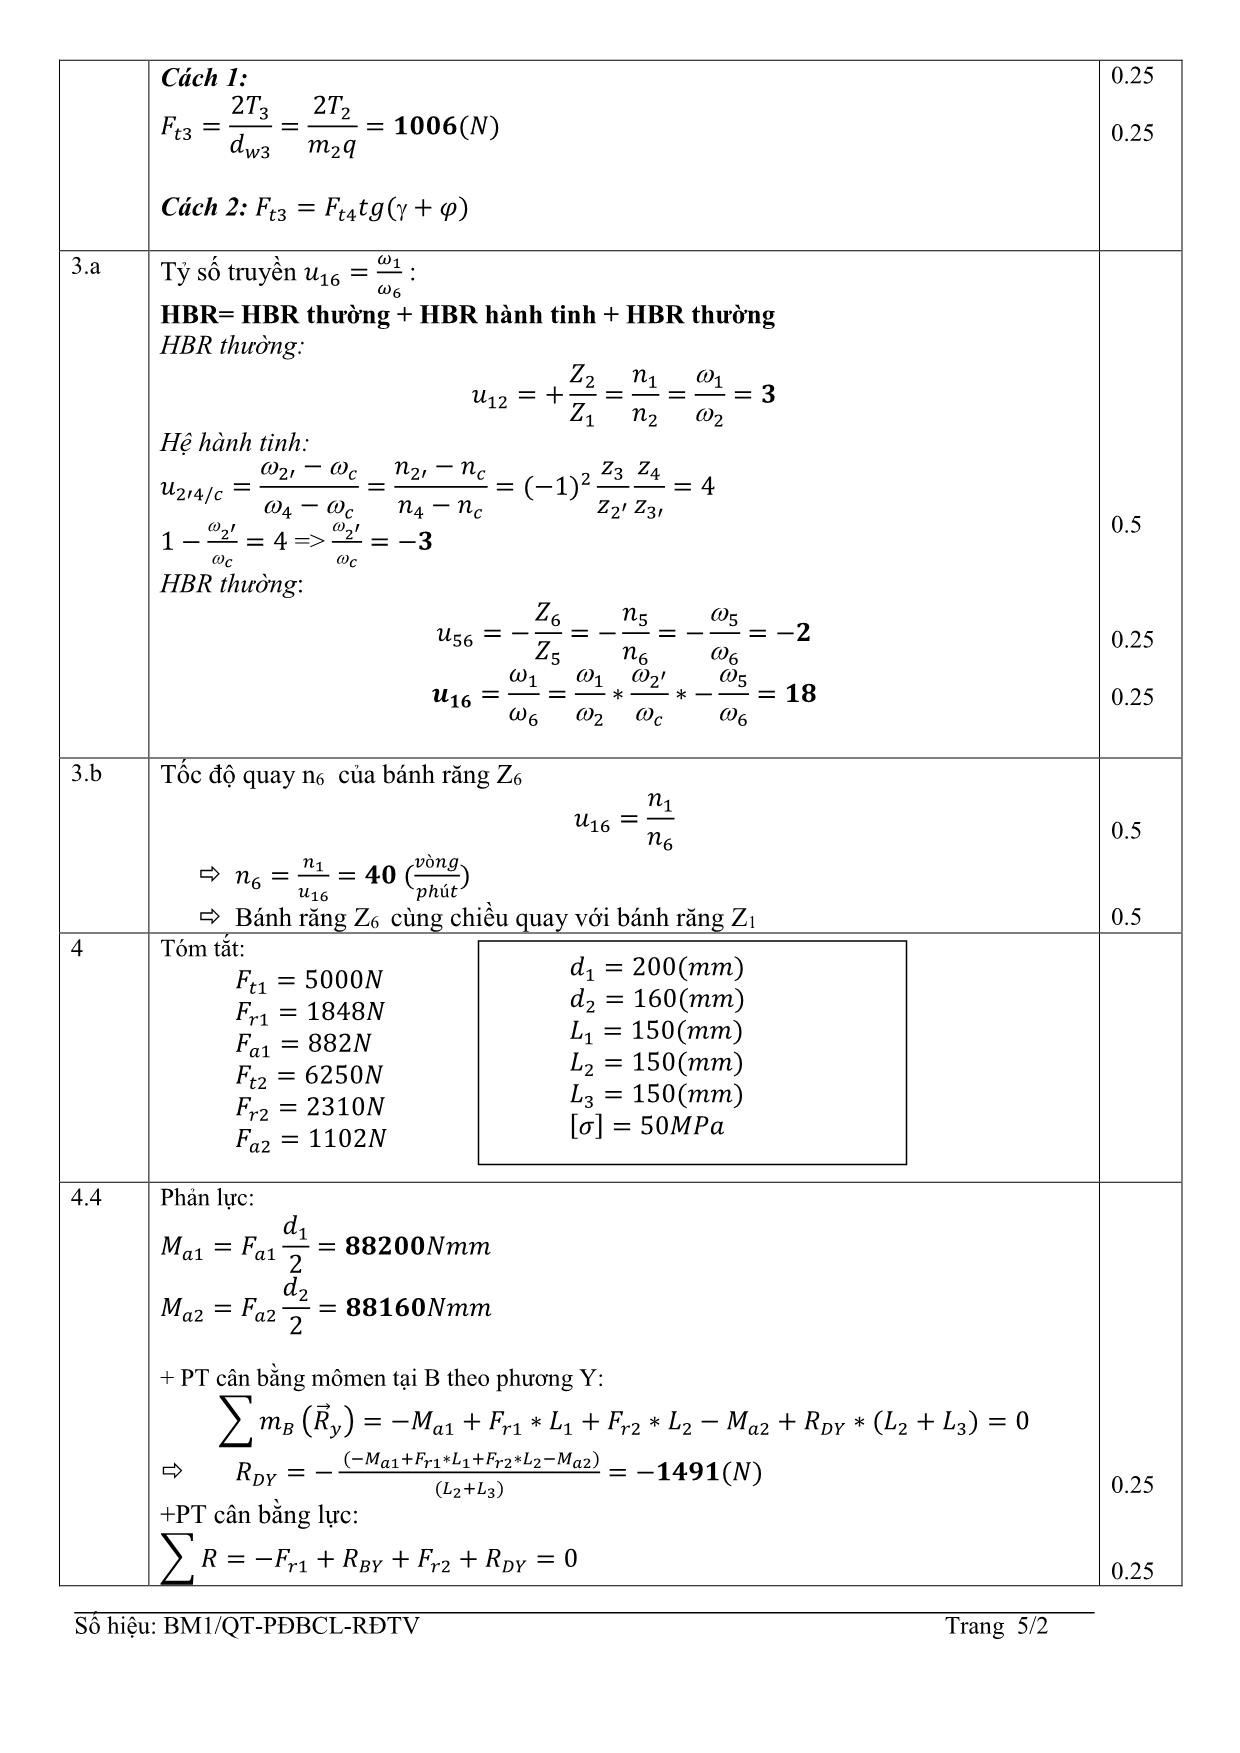 Đề thi Cuối học kỳ 3 môn Nguyên lý chi tiết máy - Năm học 2014-2015 trang 5